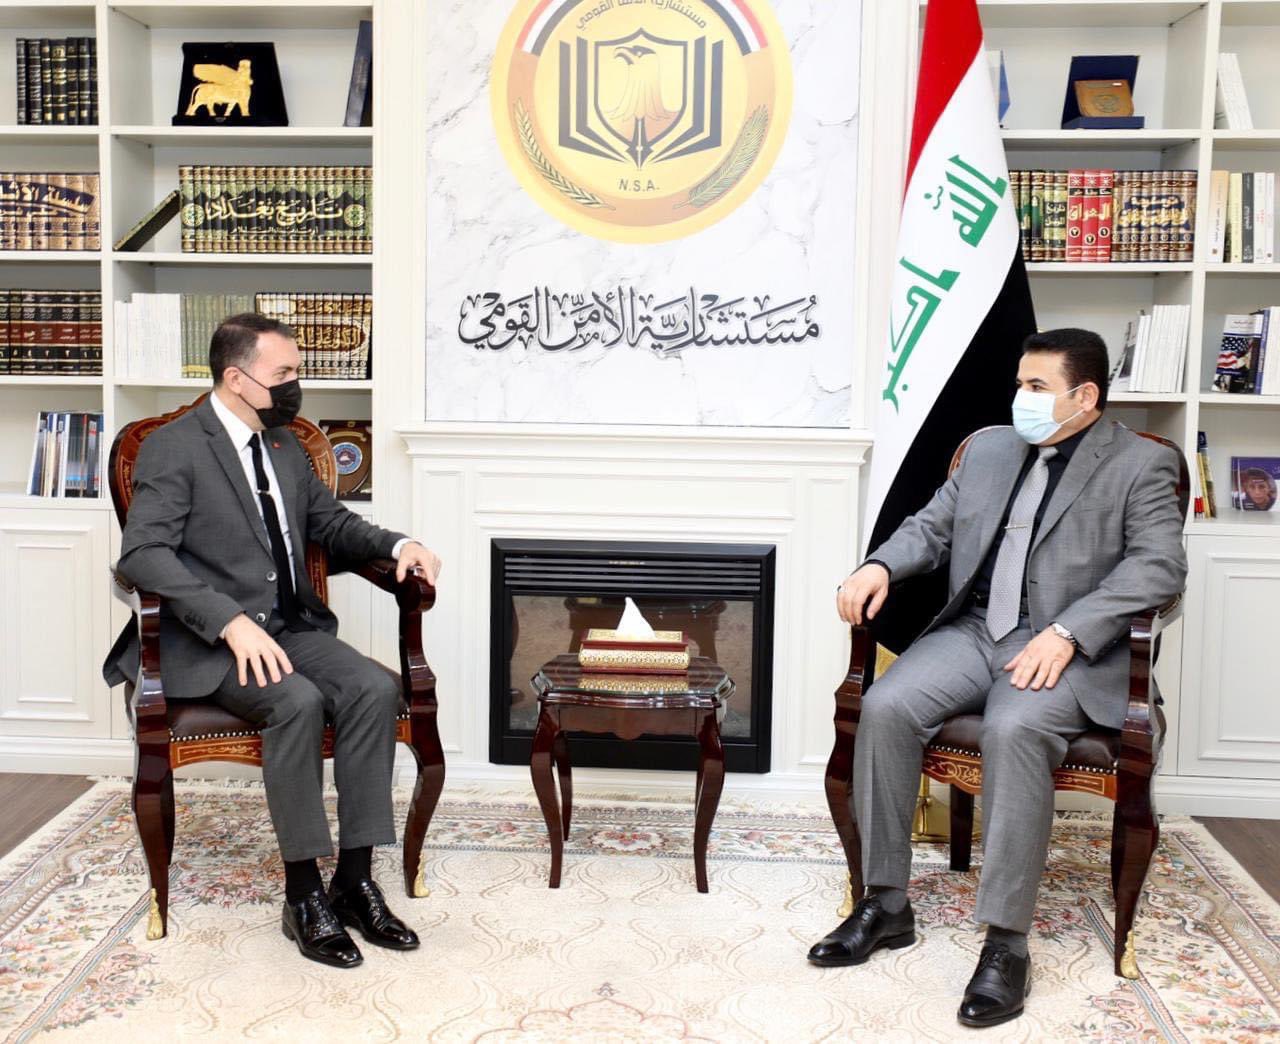 Συνάντηση του πρέσβη της Τουρκία στο Ιράκ με τον υφυπουργό Εθνικής Ασφαλείας του Ιράκ